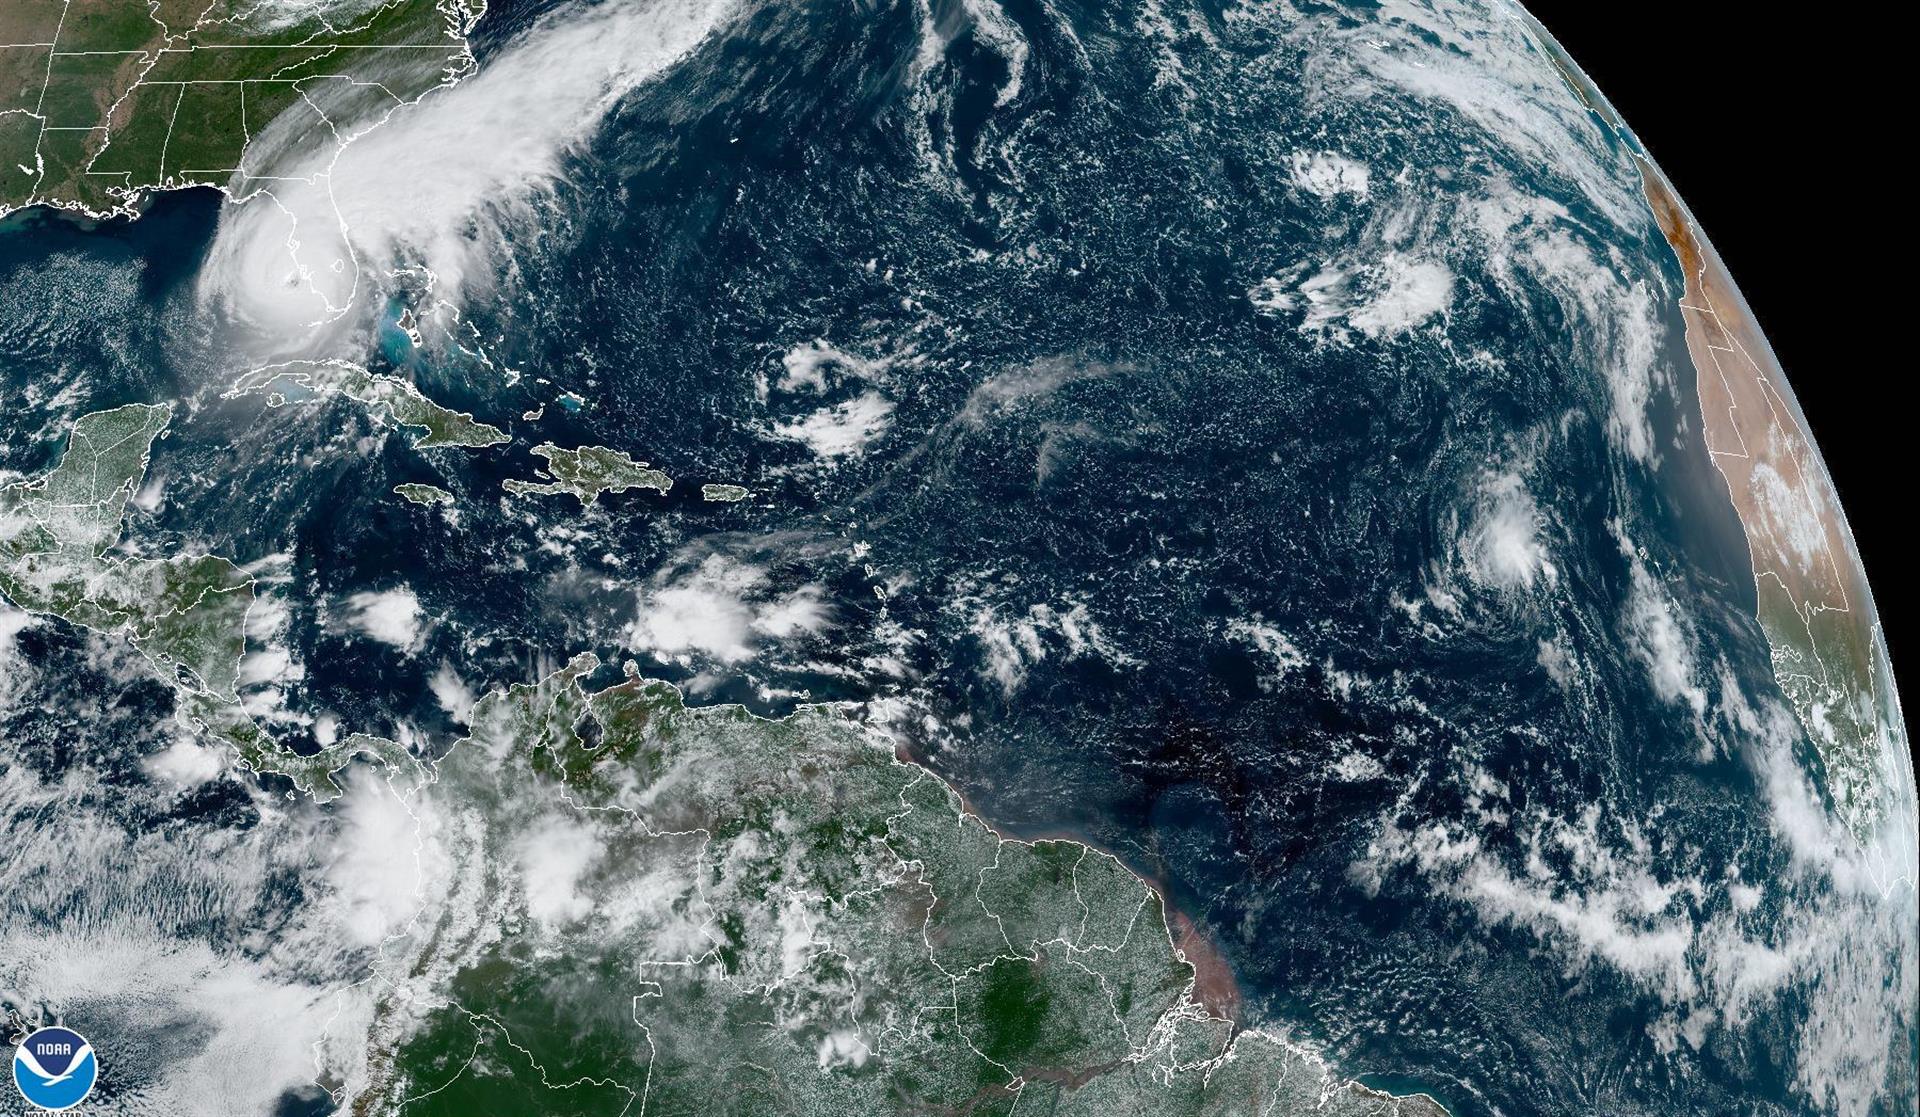 Imagen satelital cedida hoy por la Oficina Nacional de Administración Oceánica y Atmosférica de Estados Unidos (NOAA), a través del Centro Nacional de Huracanes (NHC), en la que se registra la localización del huracán Ian de categoría 4 en la escala Saffir-Simpson en el Golfo de México frente a la costa de Florida. Ian enfila hacia la costa oeste de Florida con vientos de 155 millas por hora (250 km/h), donde se prevé toque tierra este miércoles y produzca efectos catastróficos, mientras las autoridades piden a la población de esa área a protegerse y 